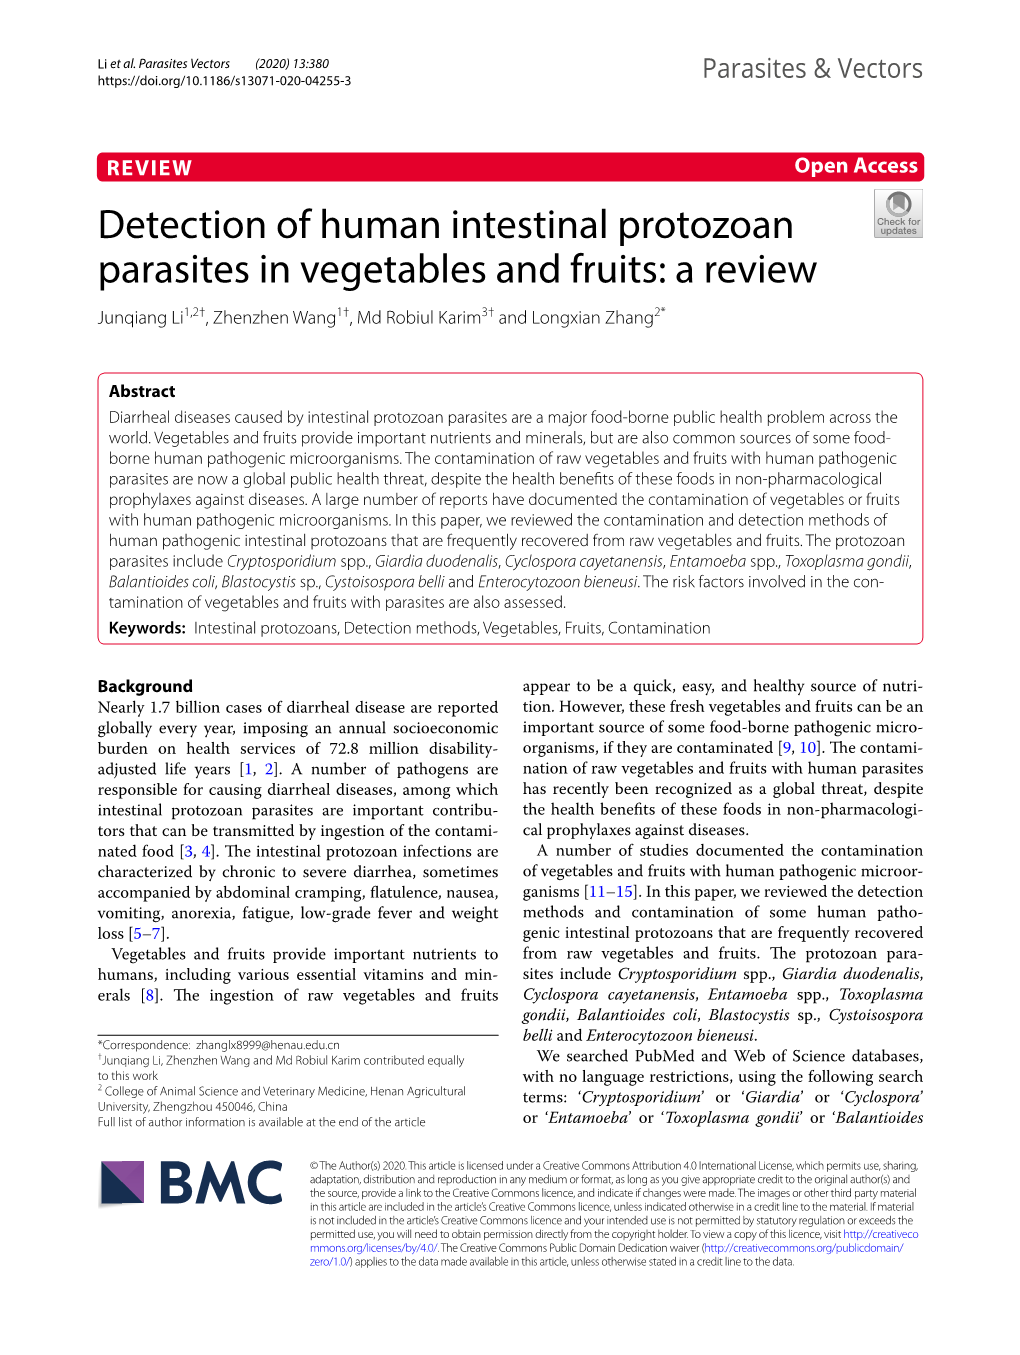 Detection of Human Intestinal Protozoan Parasites in Vegetables and Fruits: a Review Junqiang Li1,2†, Zhenzhen Wang1†, Md Robiul Karim3† and Longxian Zhang2*